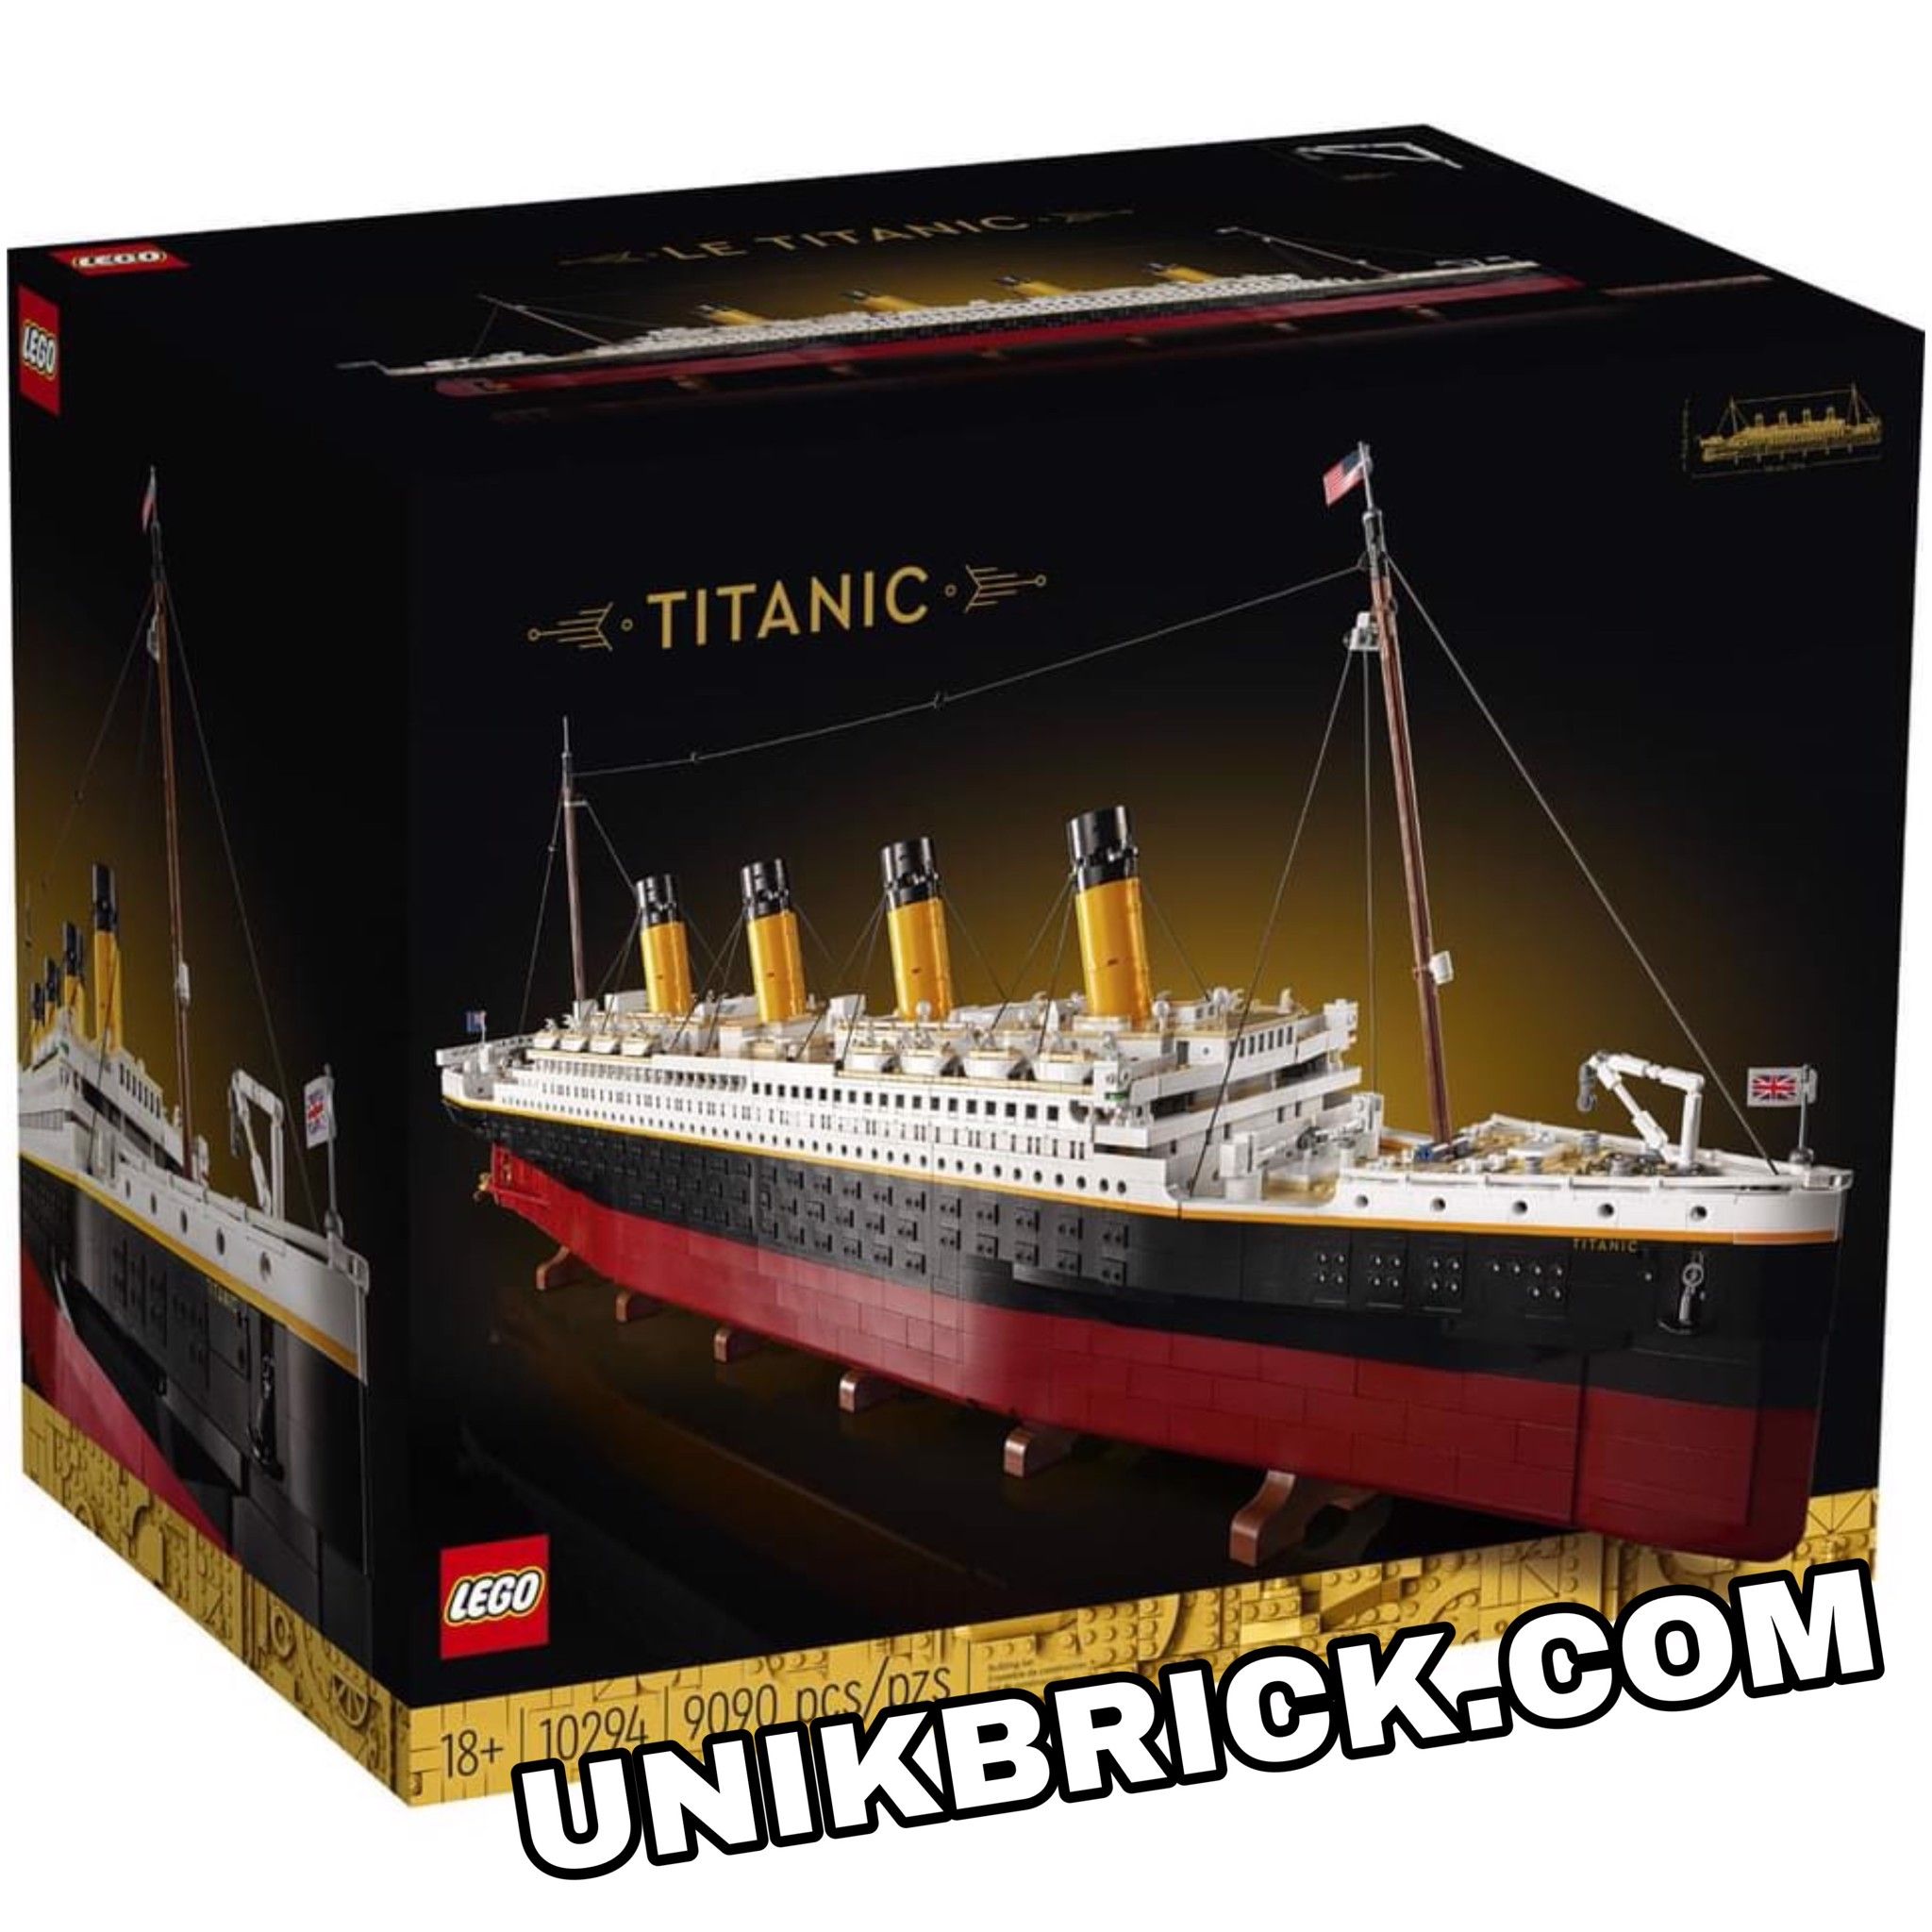 Ota selvää 57+ imagen lego technic titanic